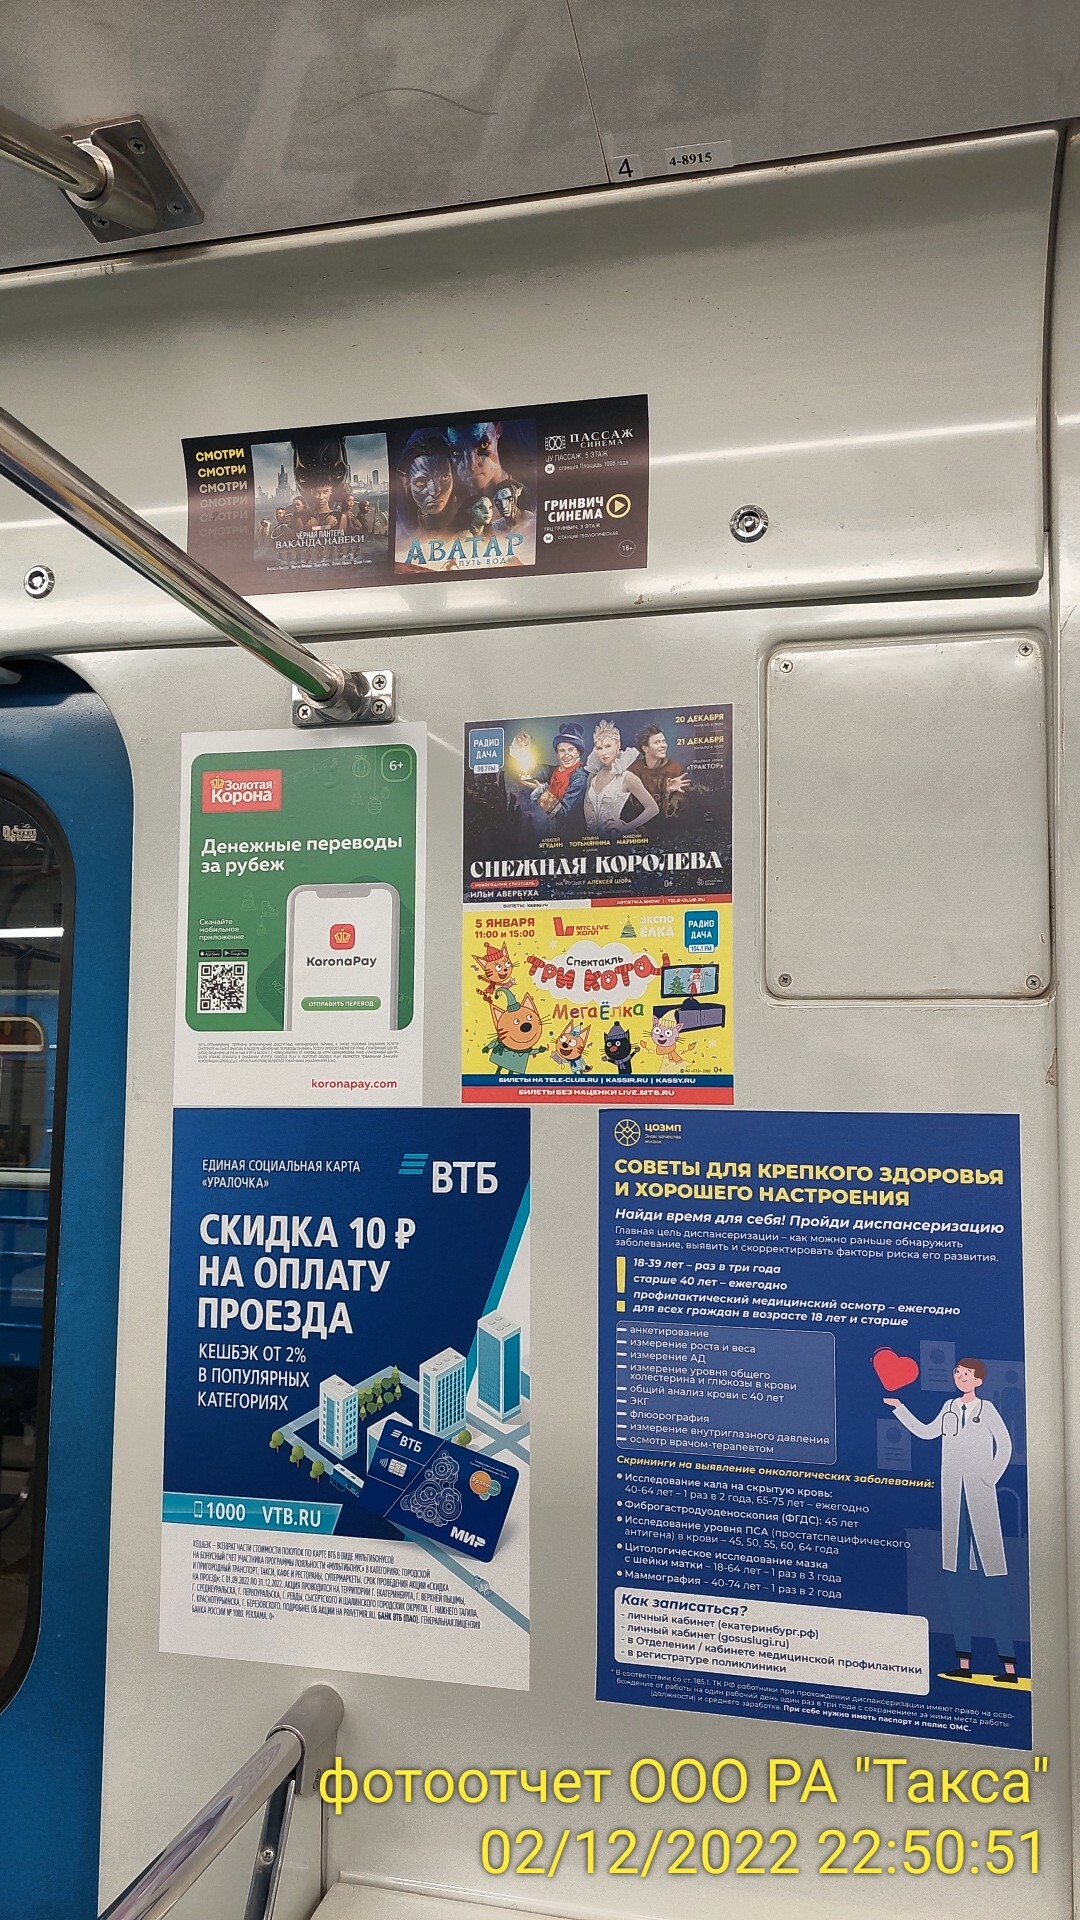 Размещение рекламных наклеек в метро – один из самых эффективных способов продвижения.